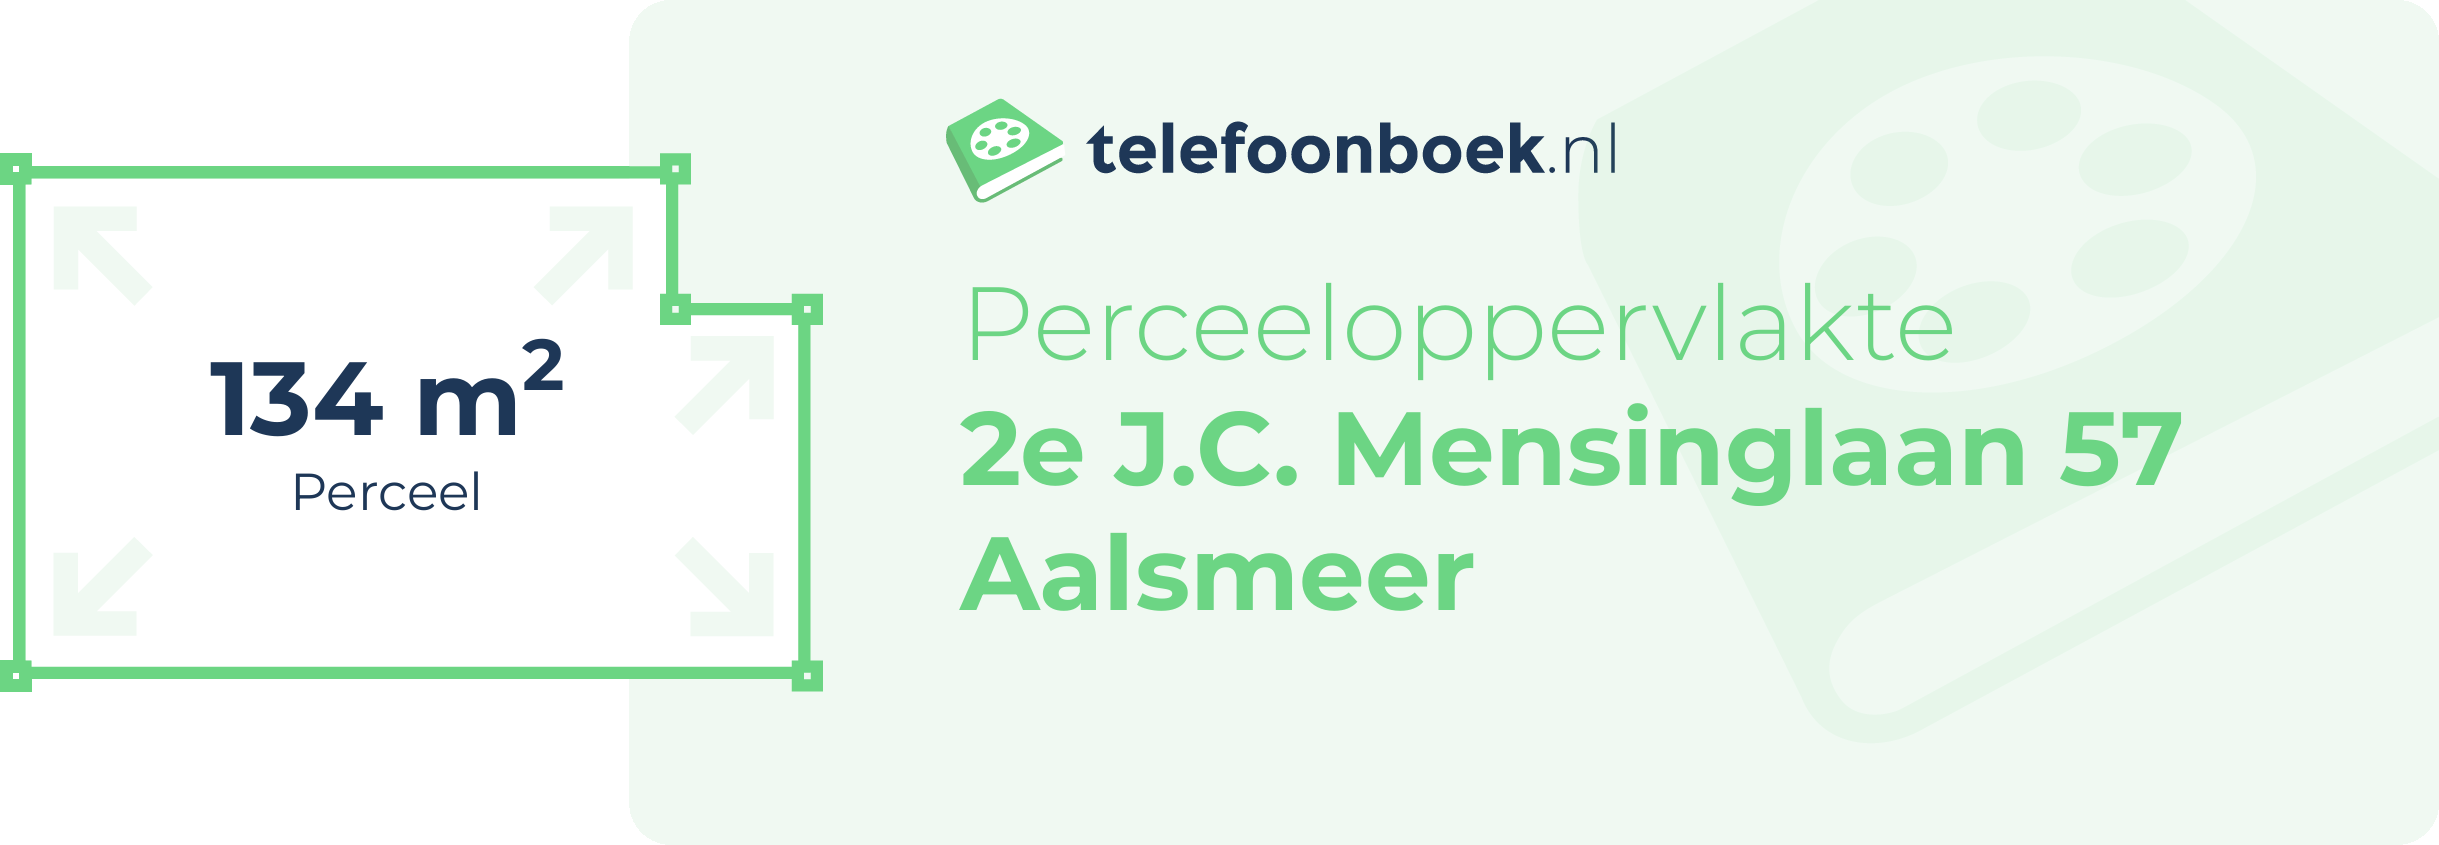 Perceeloppervlakte 2e J.C. Mensinglaan 57 Aalsmeer